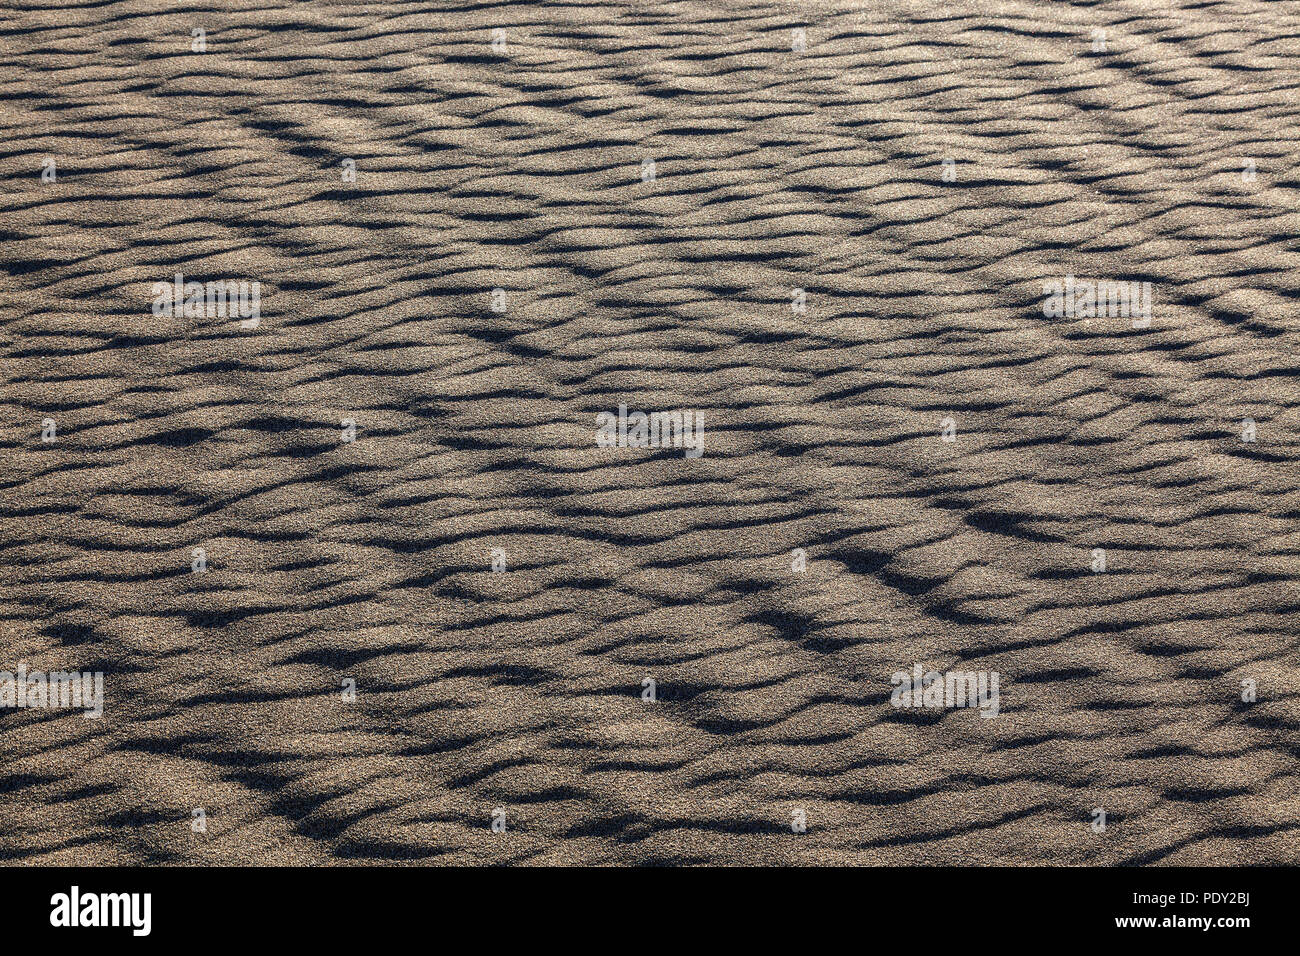 Les structures dans le sable, les dunes de Maspalomas, Dunas de Maspalomas, les structures dans le sable, réserve naturelle, Gran Canaria Banque D'Images